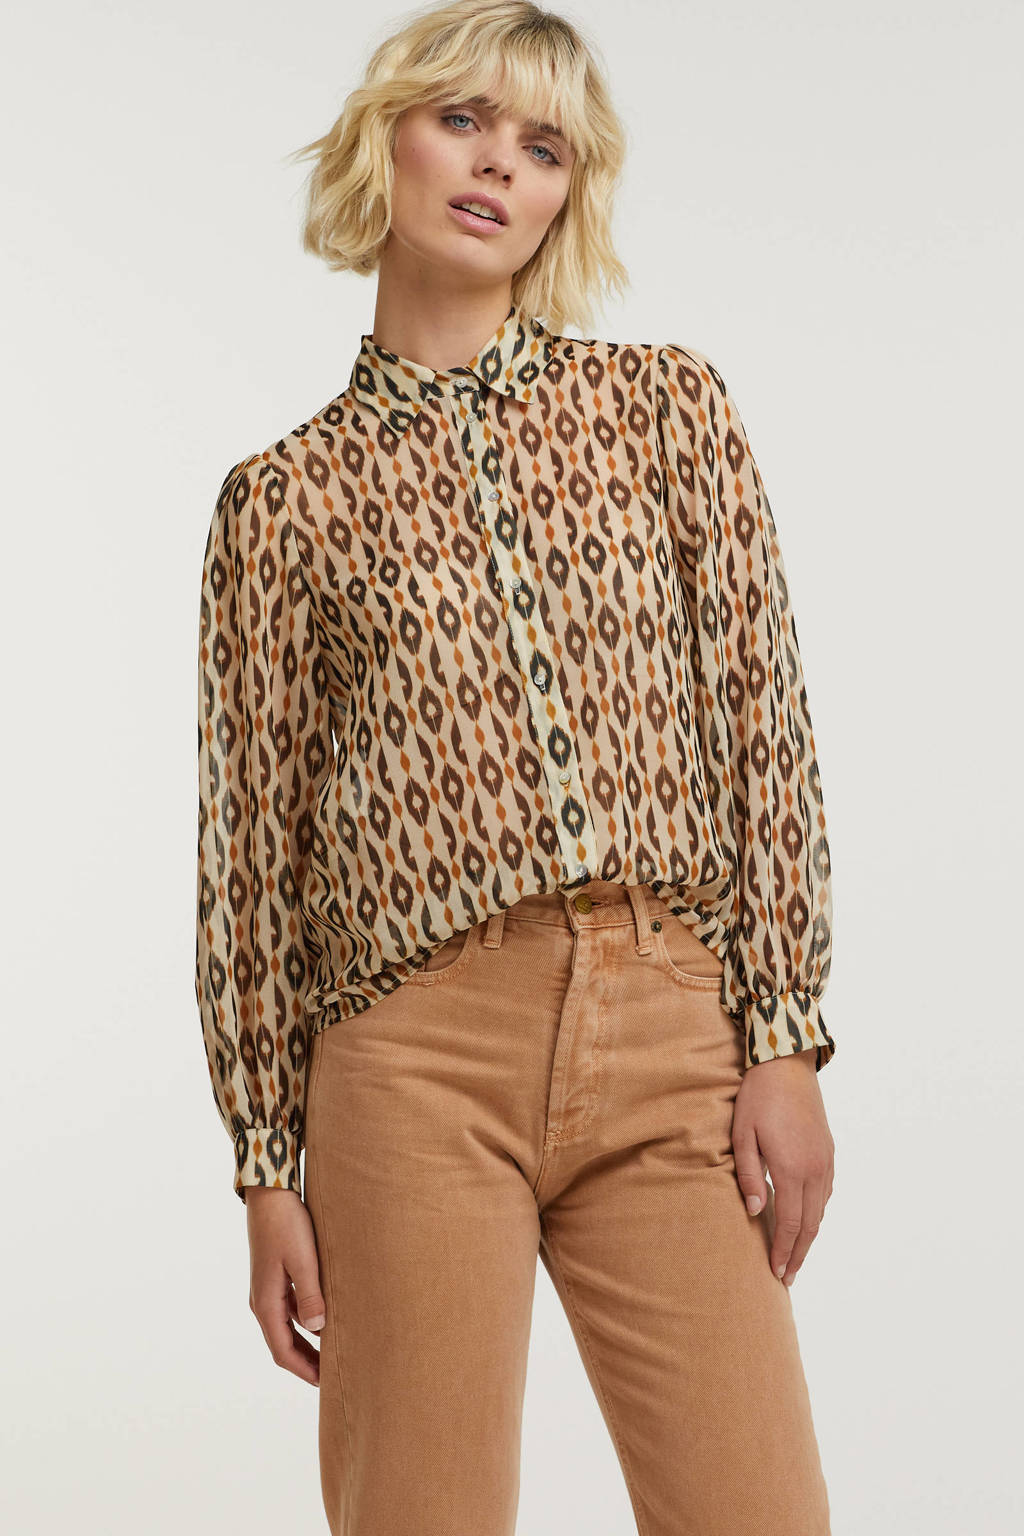 Bruine dames Aaiko blouse van polyester met all over print, lange mouwen, klassieke kraag en knoopsluiting